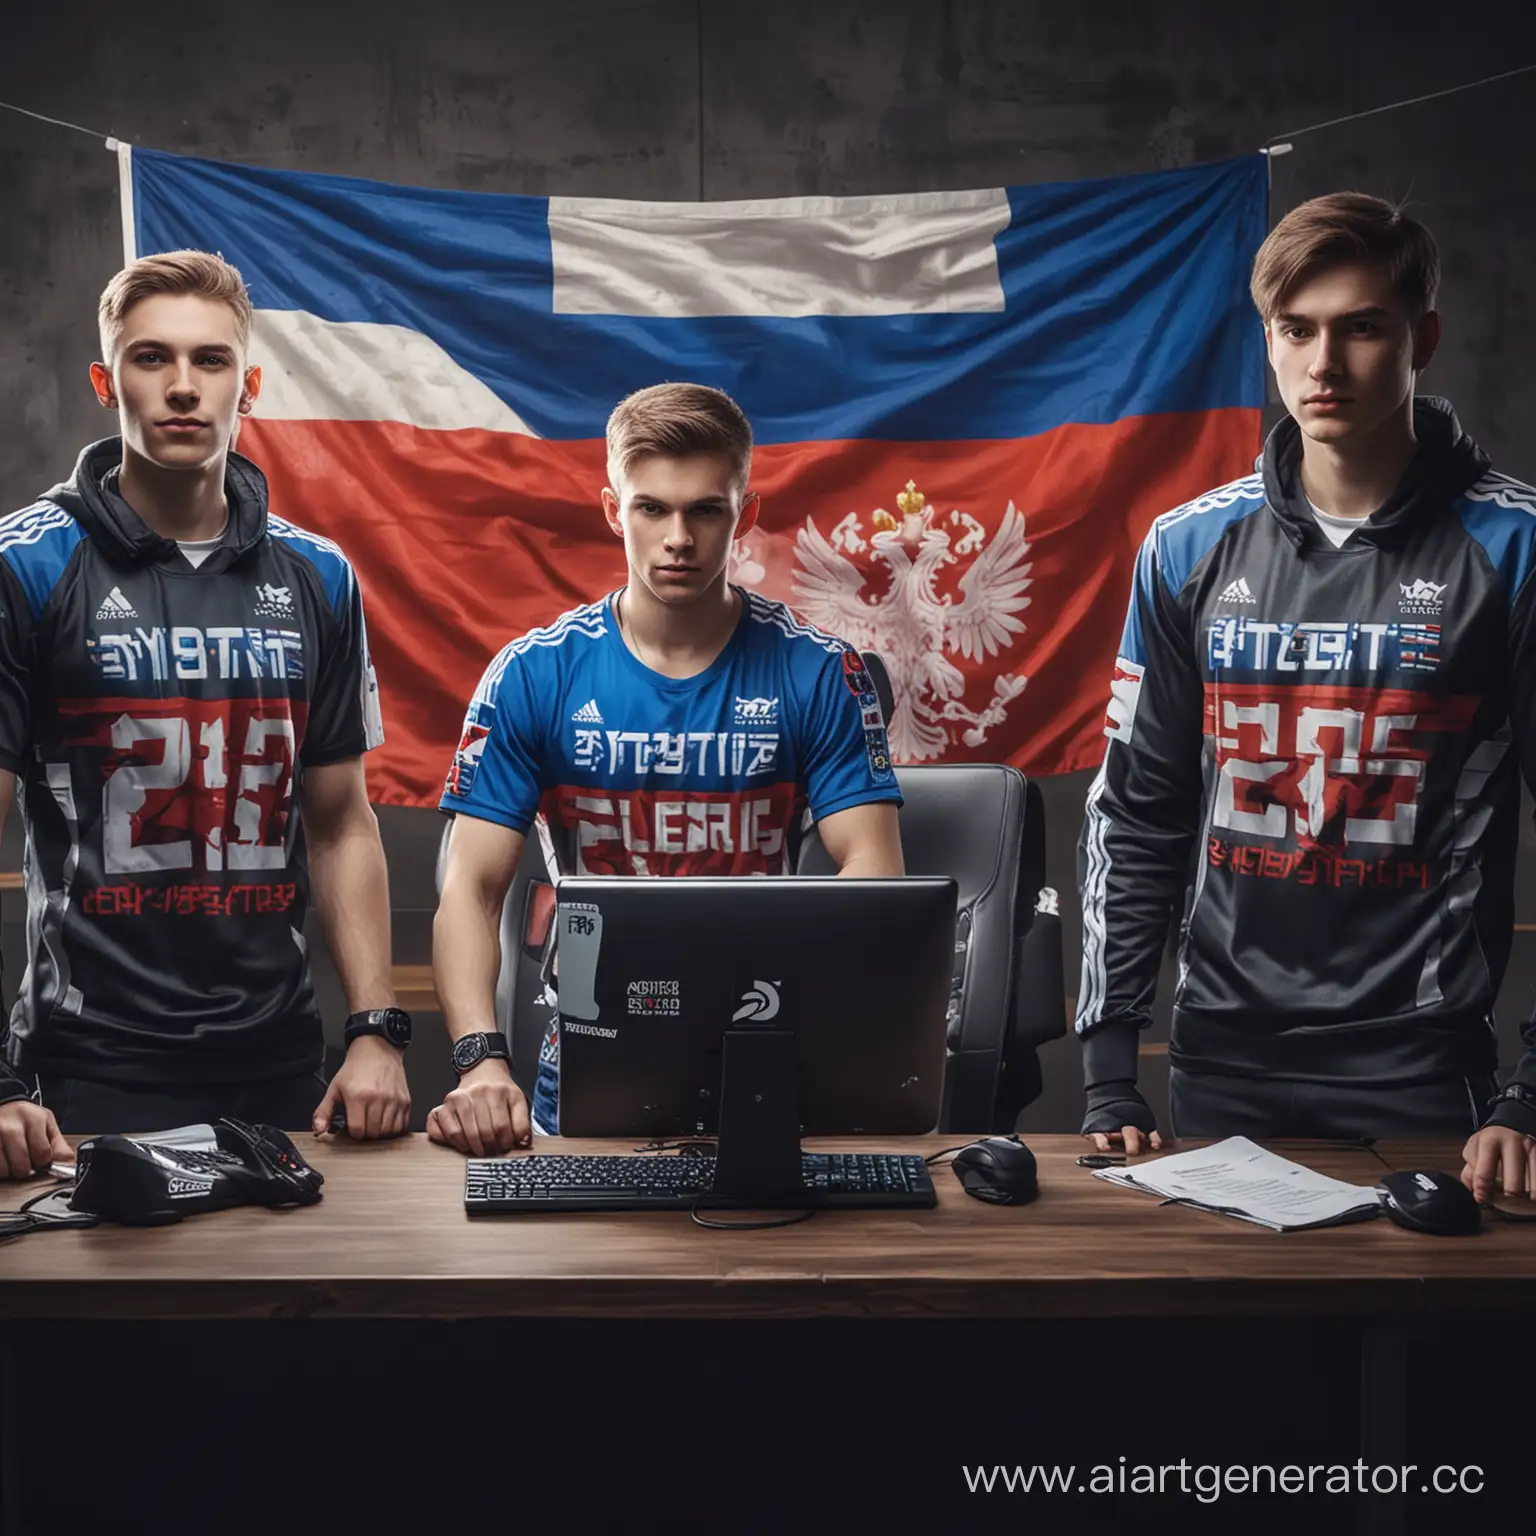 Привет! Представь что у России есть национальная сборная по киберспорта  называется ByteBlitz, ты должен нарисовать команду по киберспорту в униформе - на ней должен быть флаг России и название команды, а также на изображении должна быть киберспортивнрая символика. Должны быть мальчики 16-18 лет и они должны сидеть за компьютером и тренироваться. 